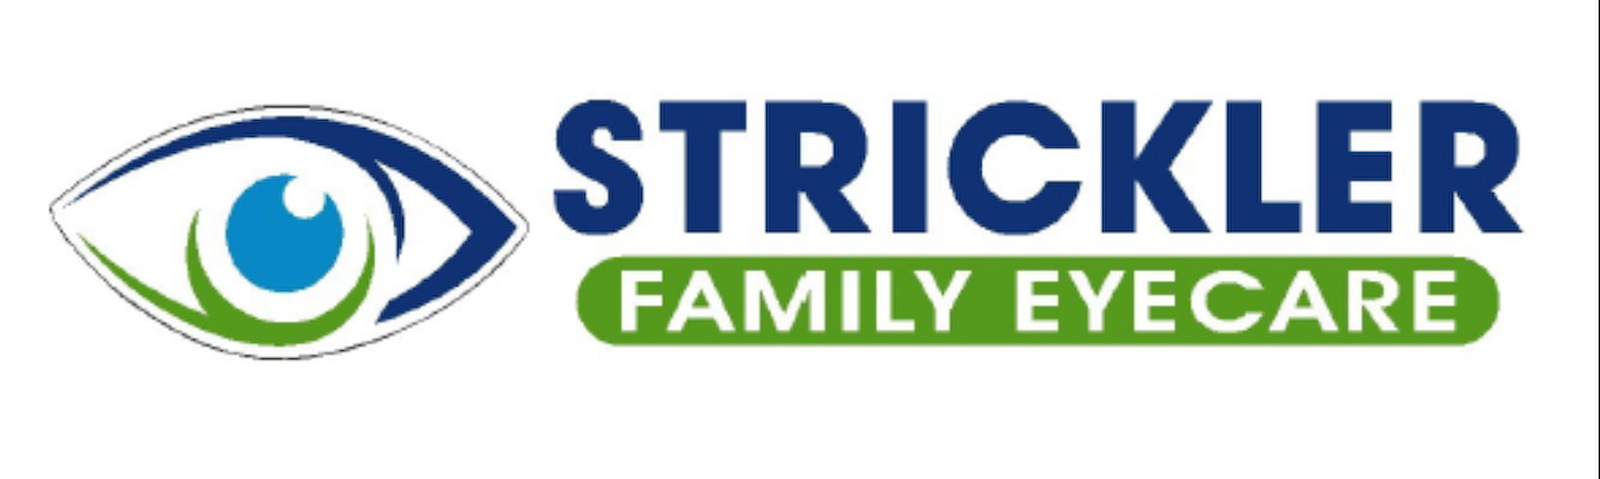 Strickler Family Eyecare